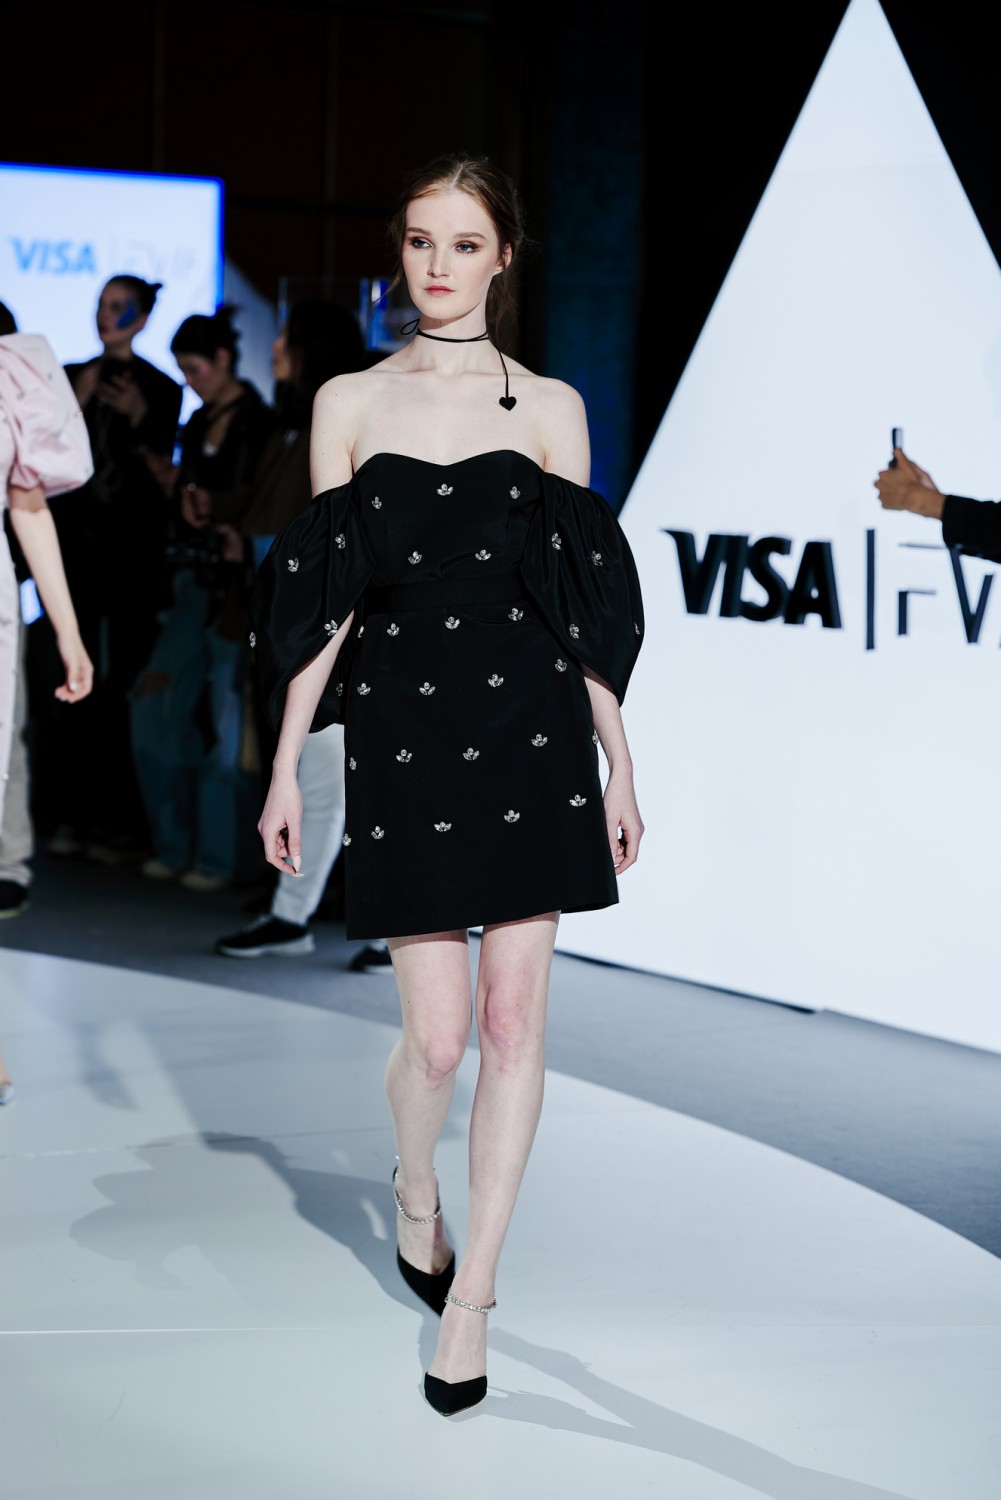 Новые грани красоты и гламура: показы первого дня Visa Fashion Week